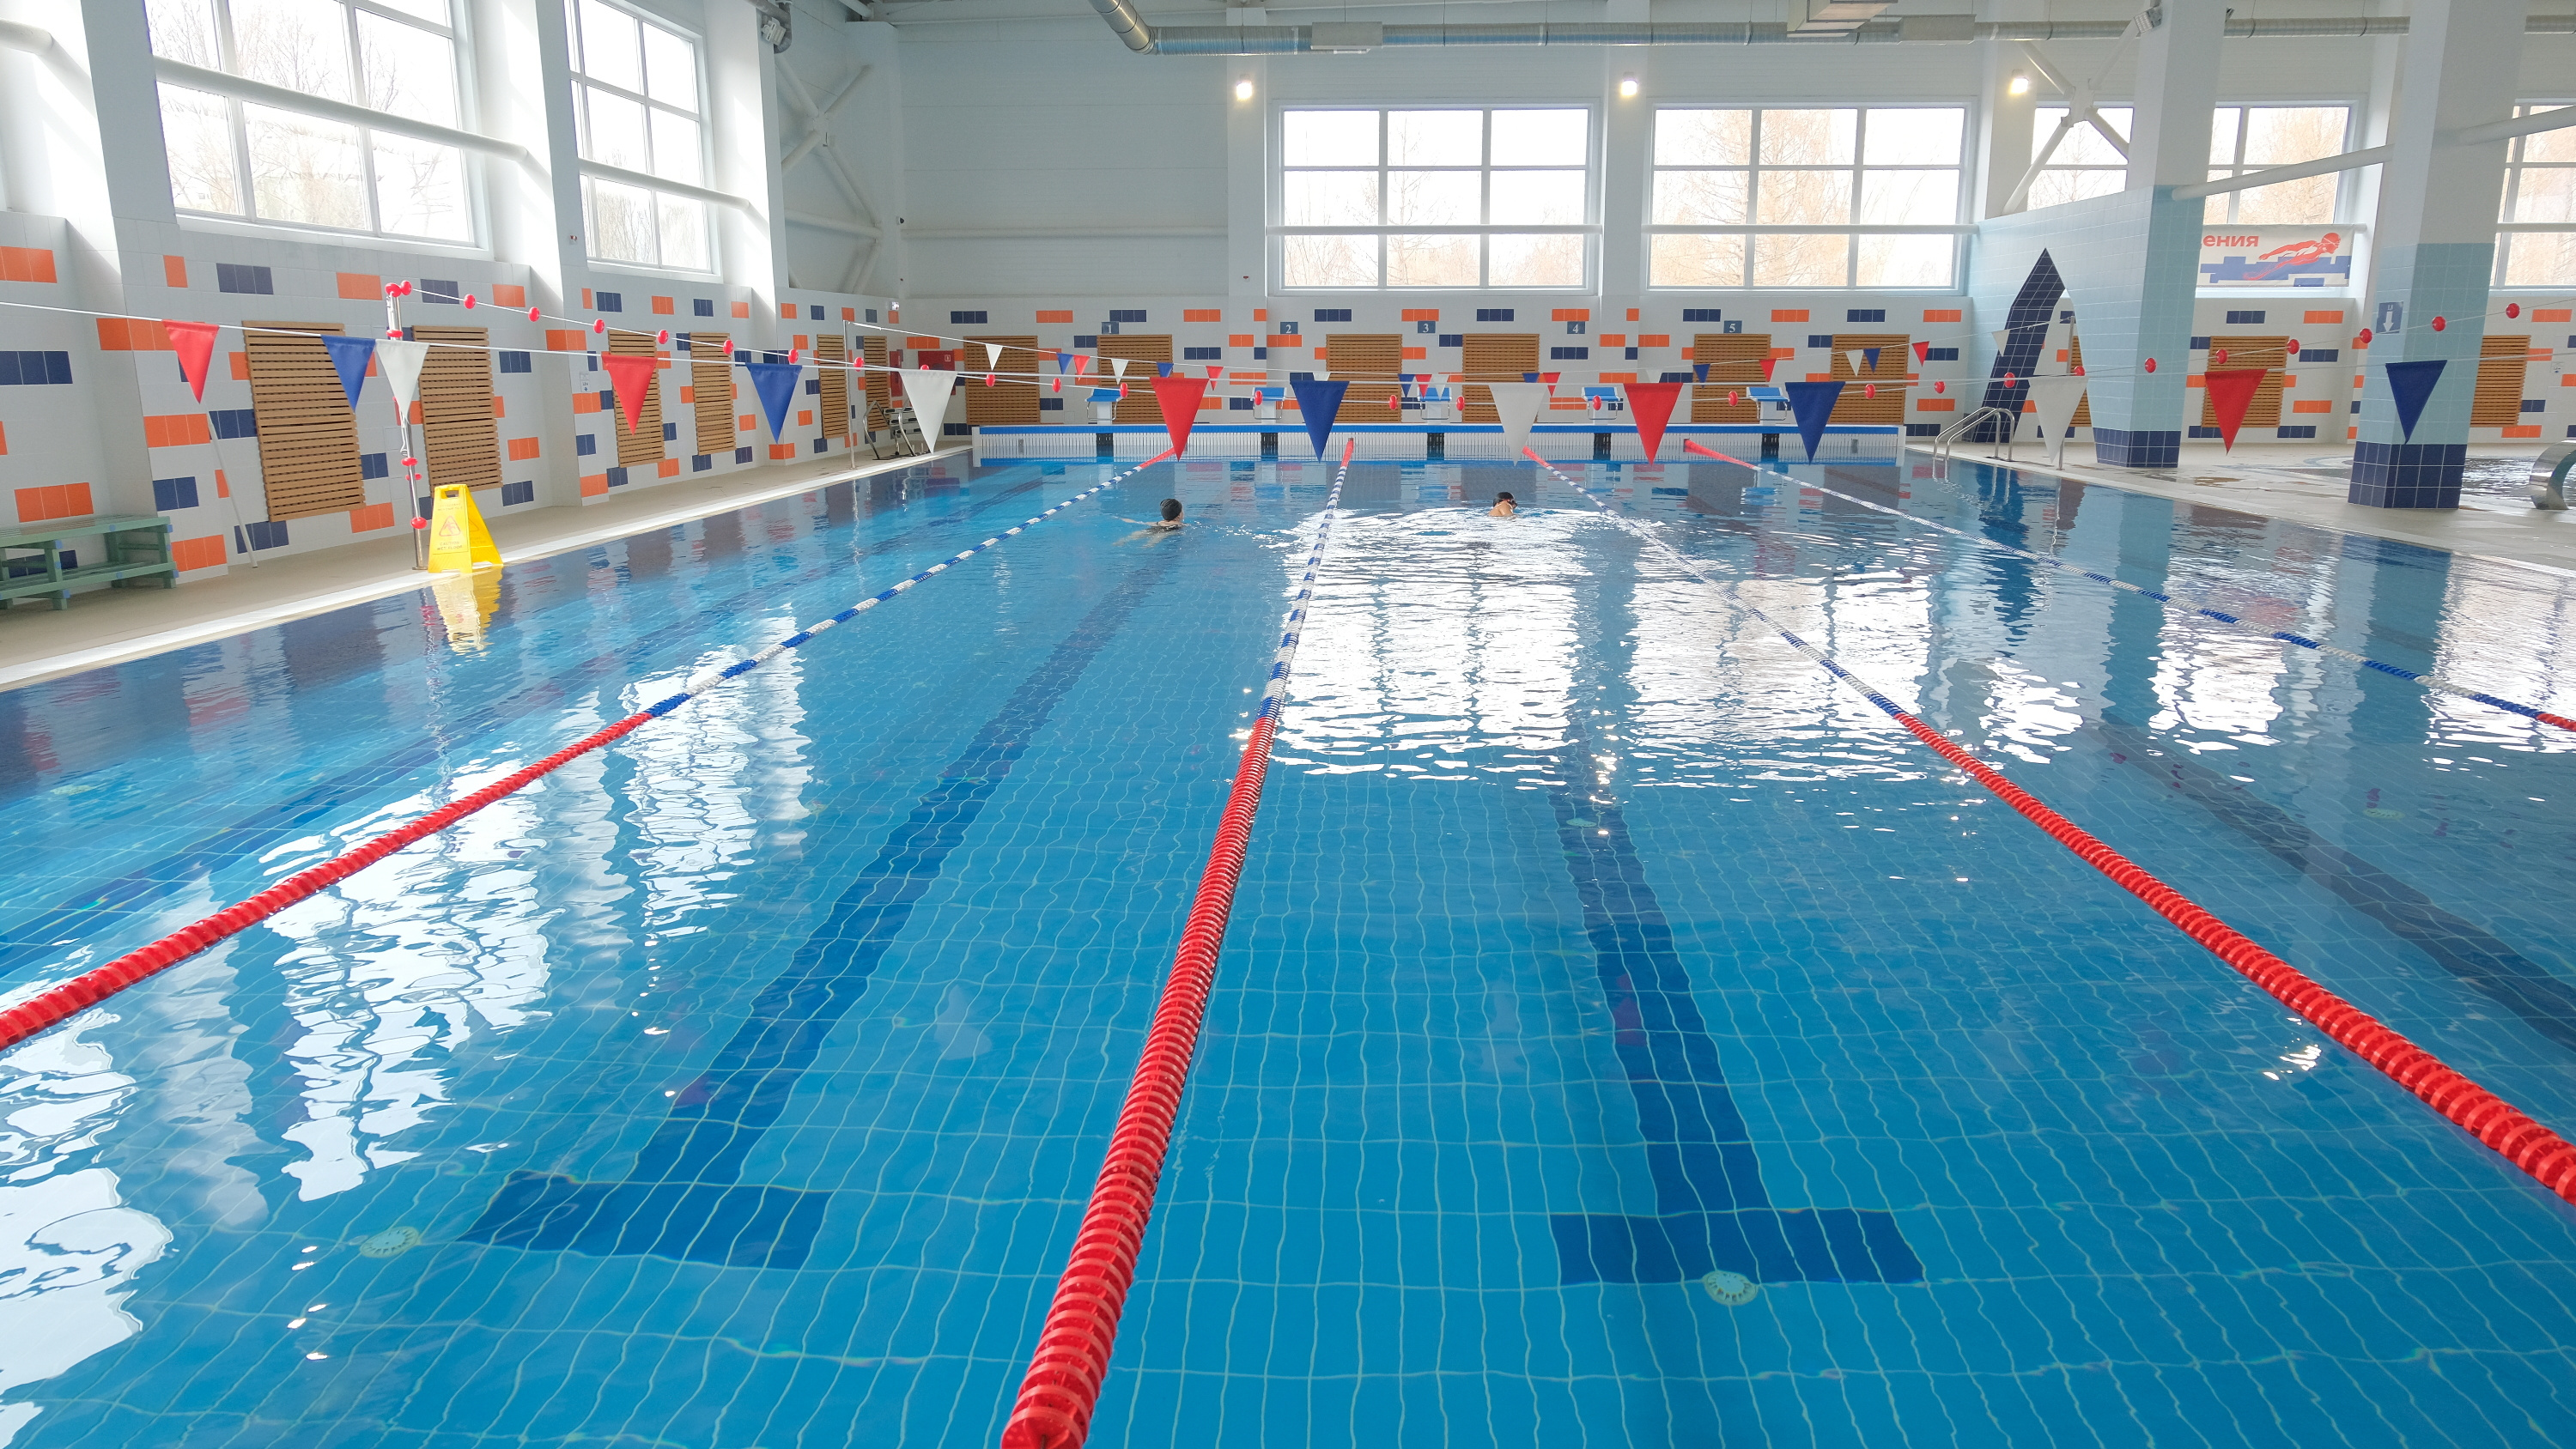 В Перми открыли новый городской бассейн с двумя чашами: для спортивного плавания и релакса. Показываем фото из комплекса